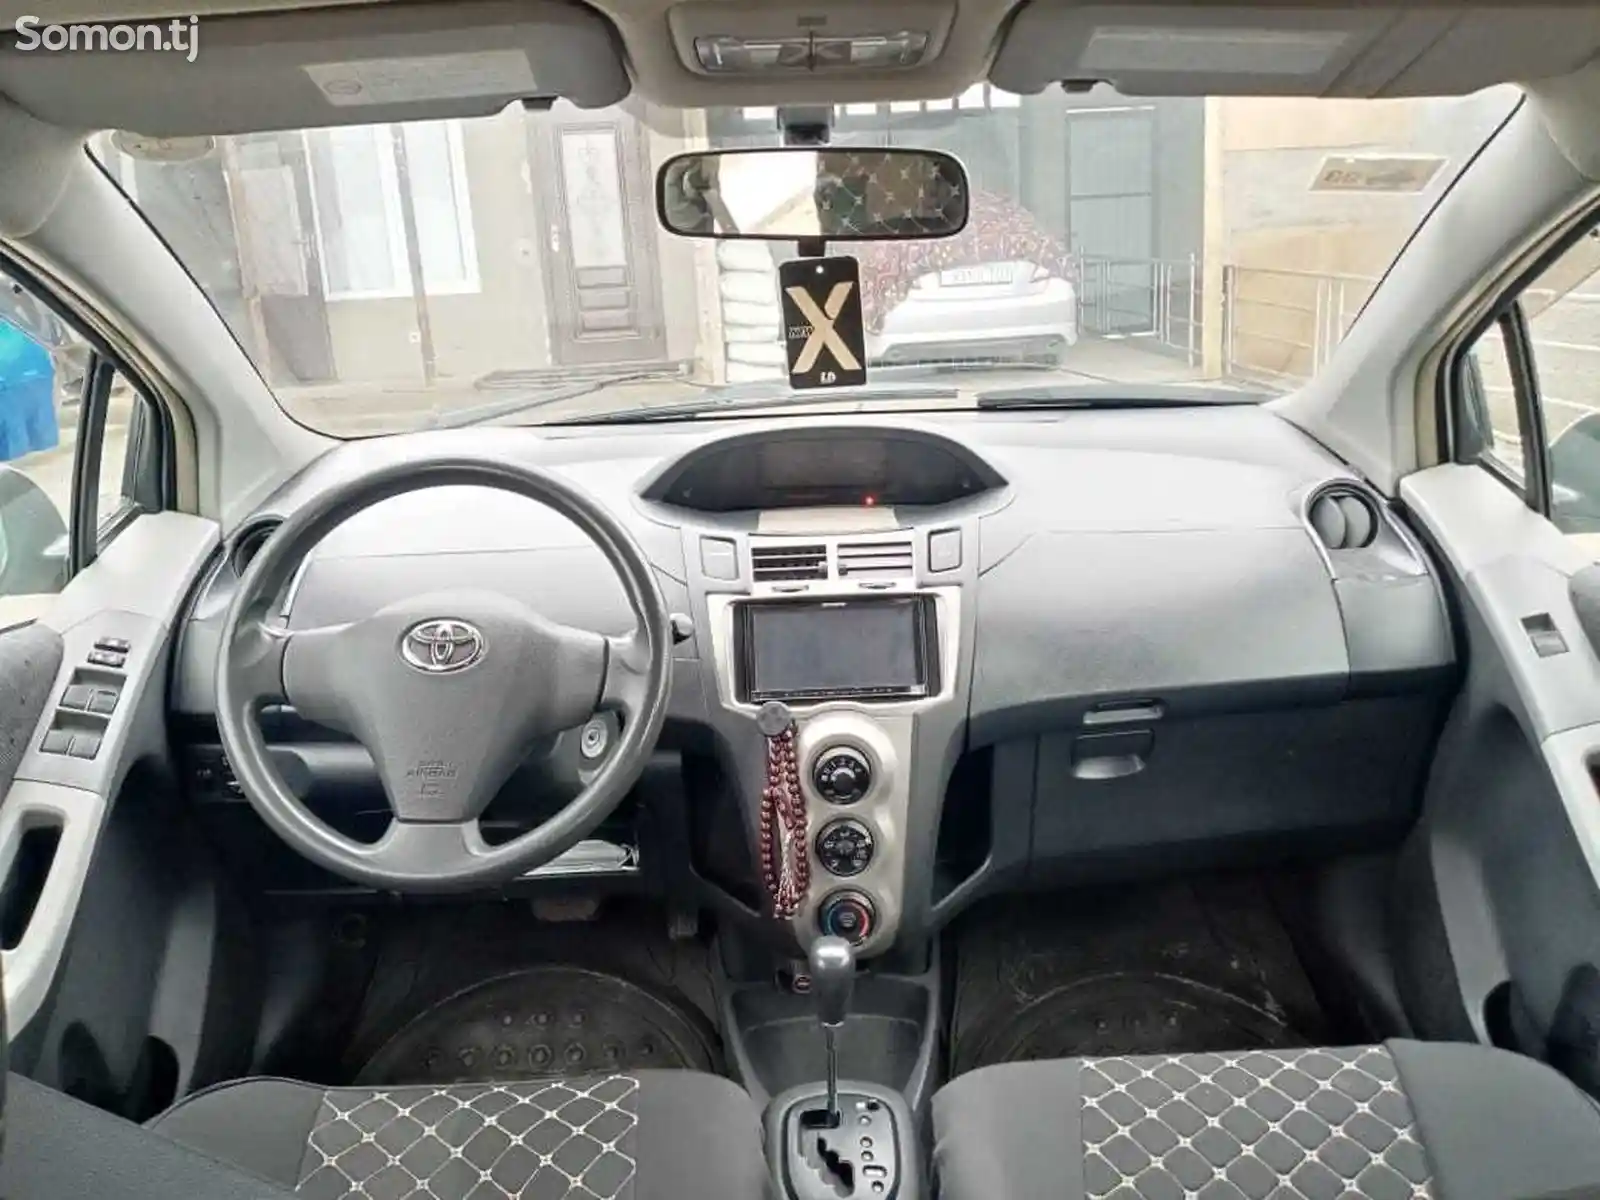 Toyota Vitz, 2010-2